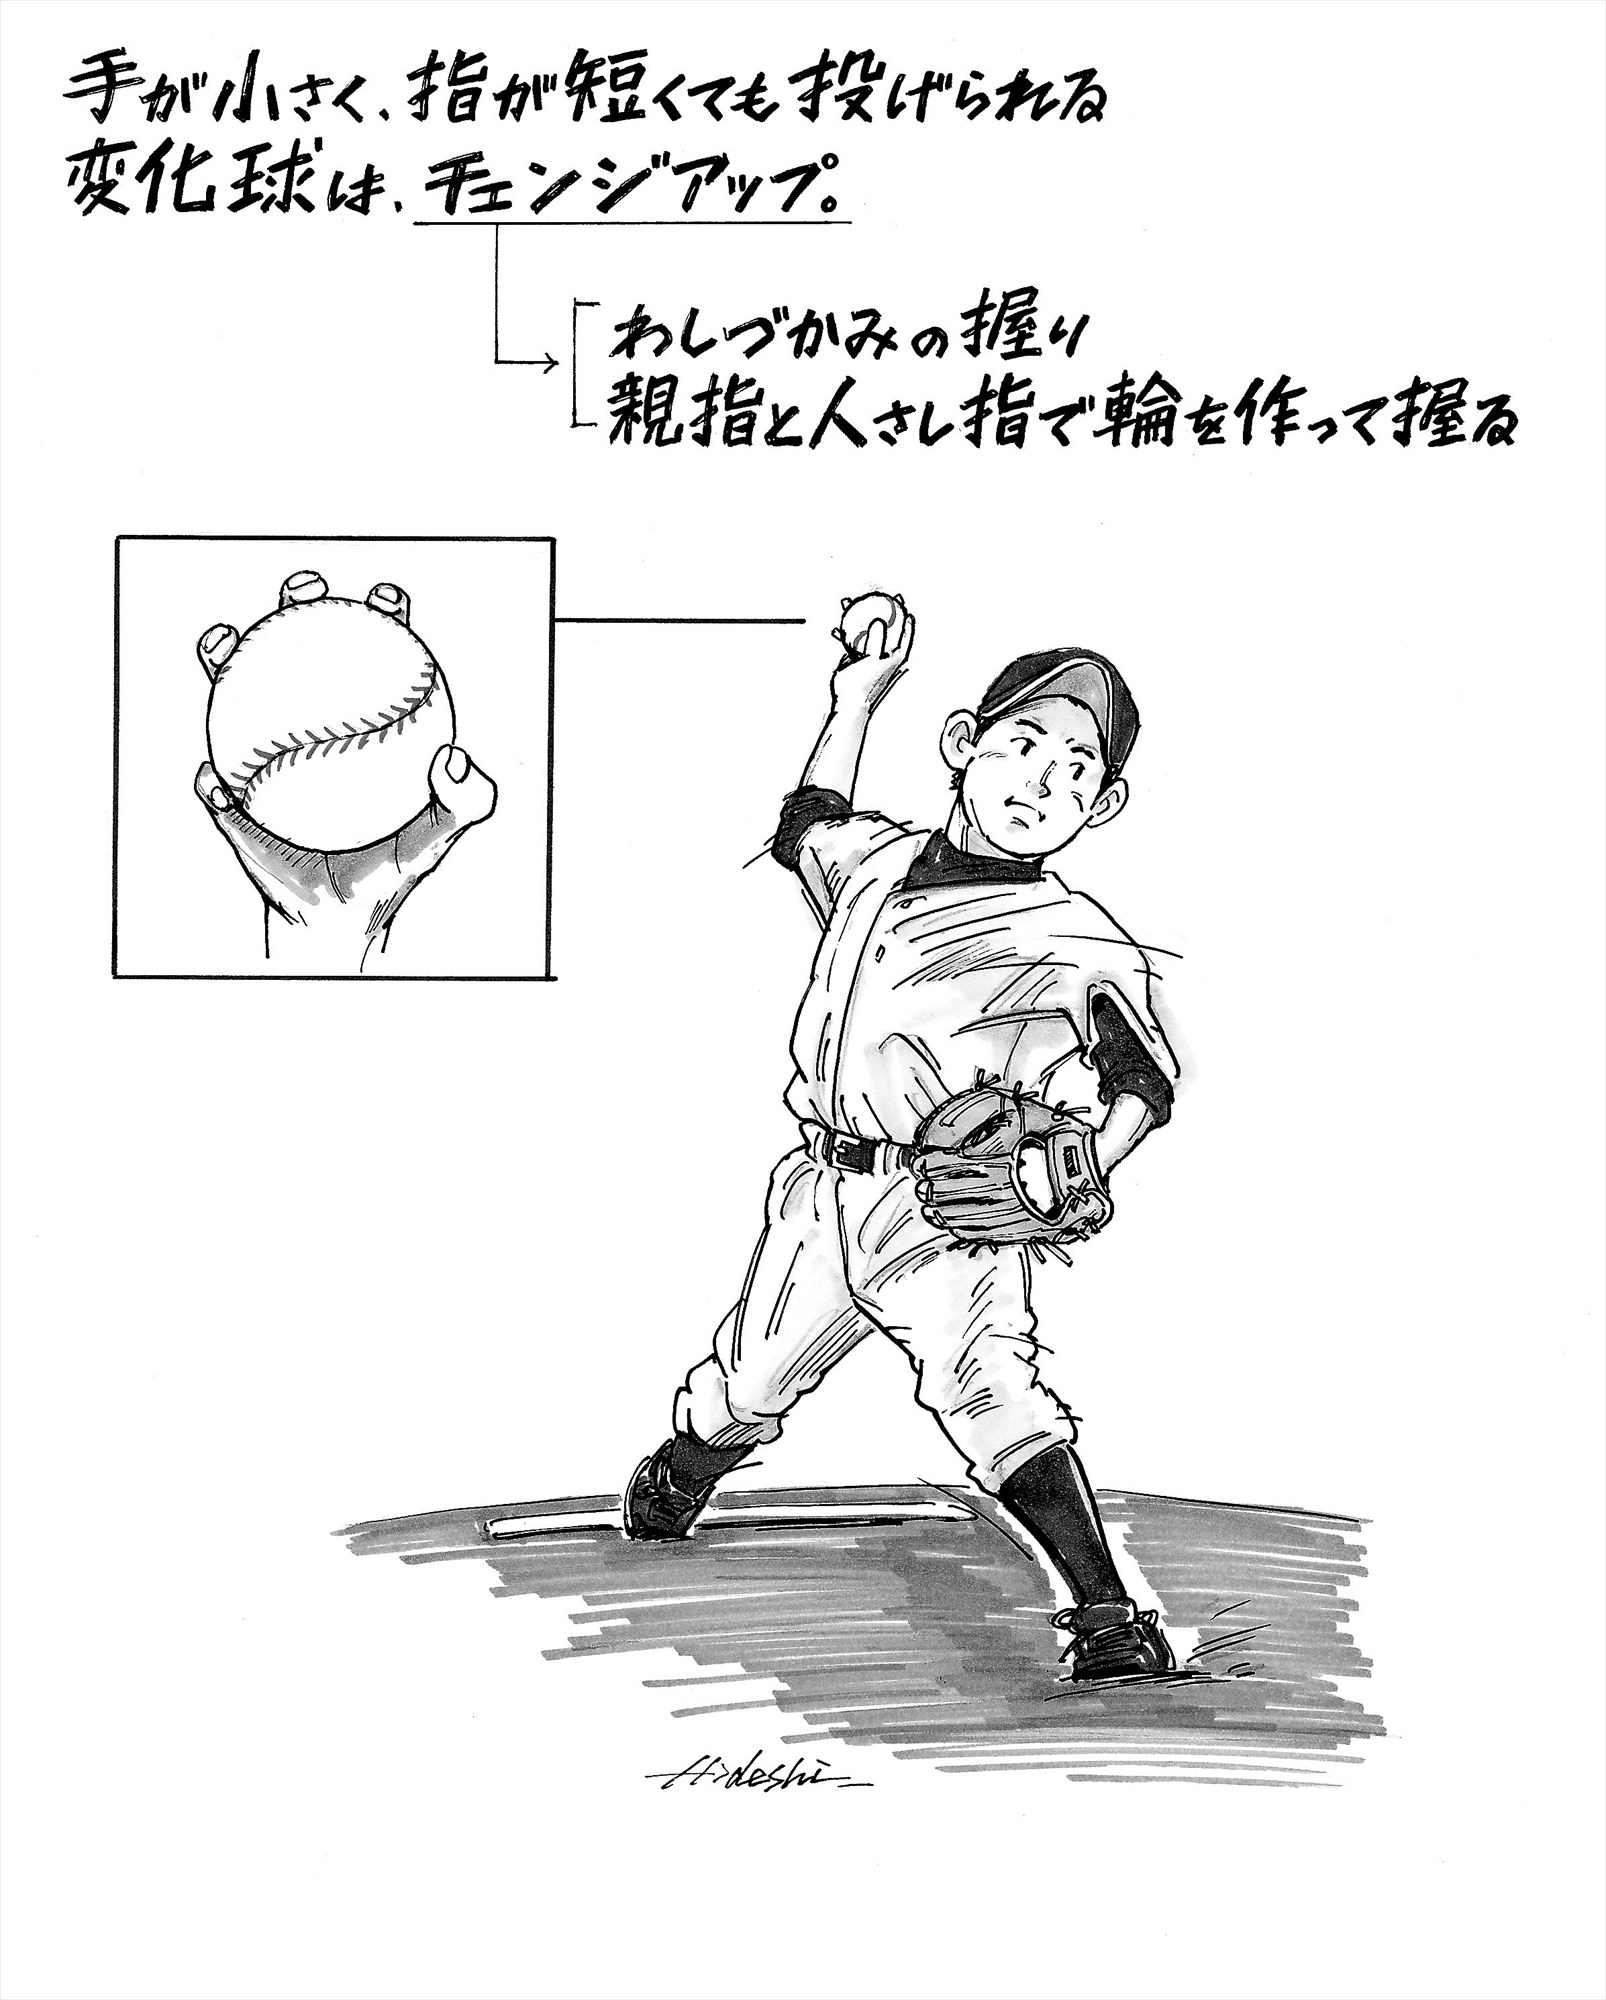 元阪神 藪恵壹に聞く 指が短くても投げられる変化球はある 野球コラム 週刊ベースボールonline